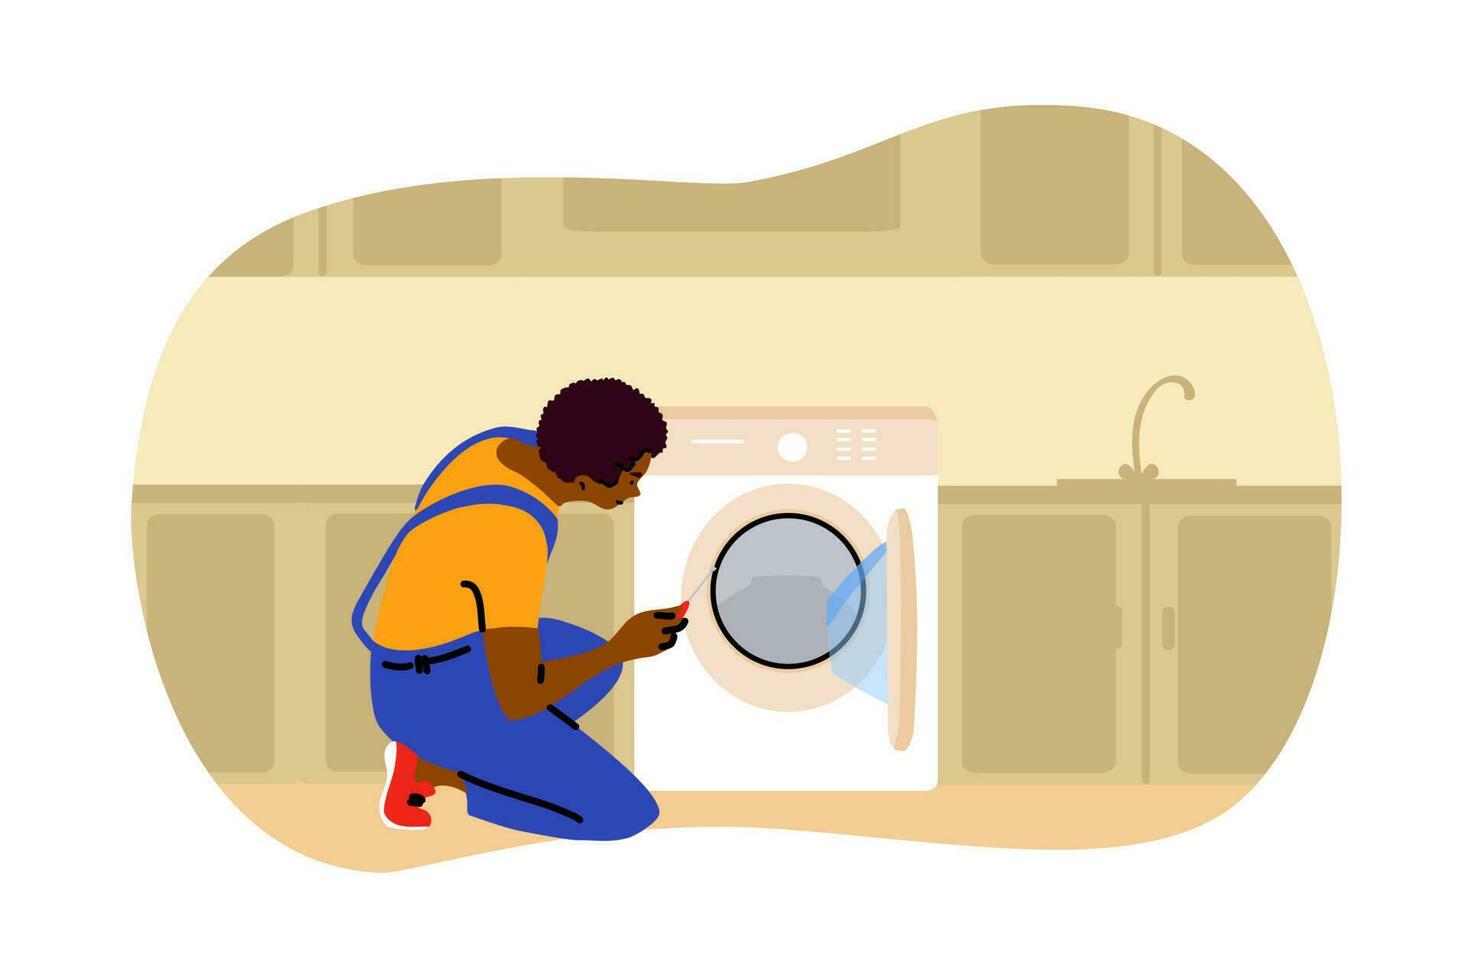 reparar, lavadero, trabajar, reemplazo concepto. joven africano americano hombre fontanero trabajador mecánico personaje reparando reemplazando Lavado máquina a hogar. Doméstico herramientas equipo mantenimiento ilustración. vector